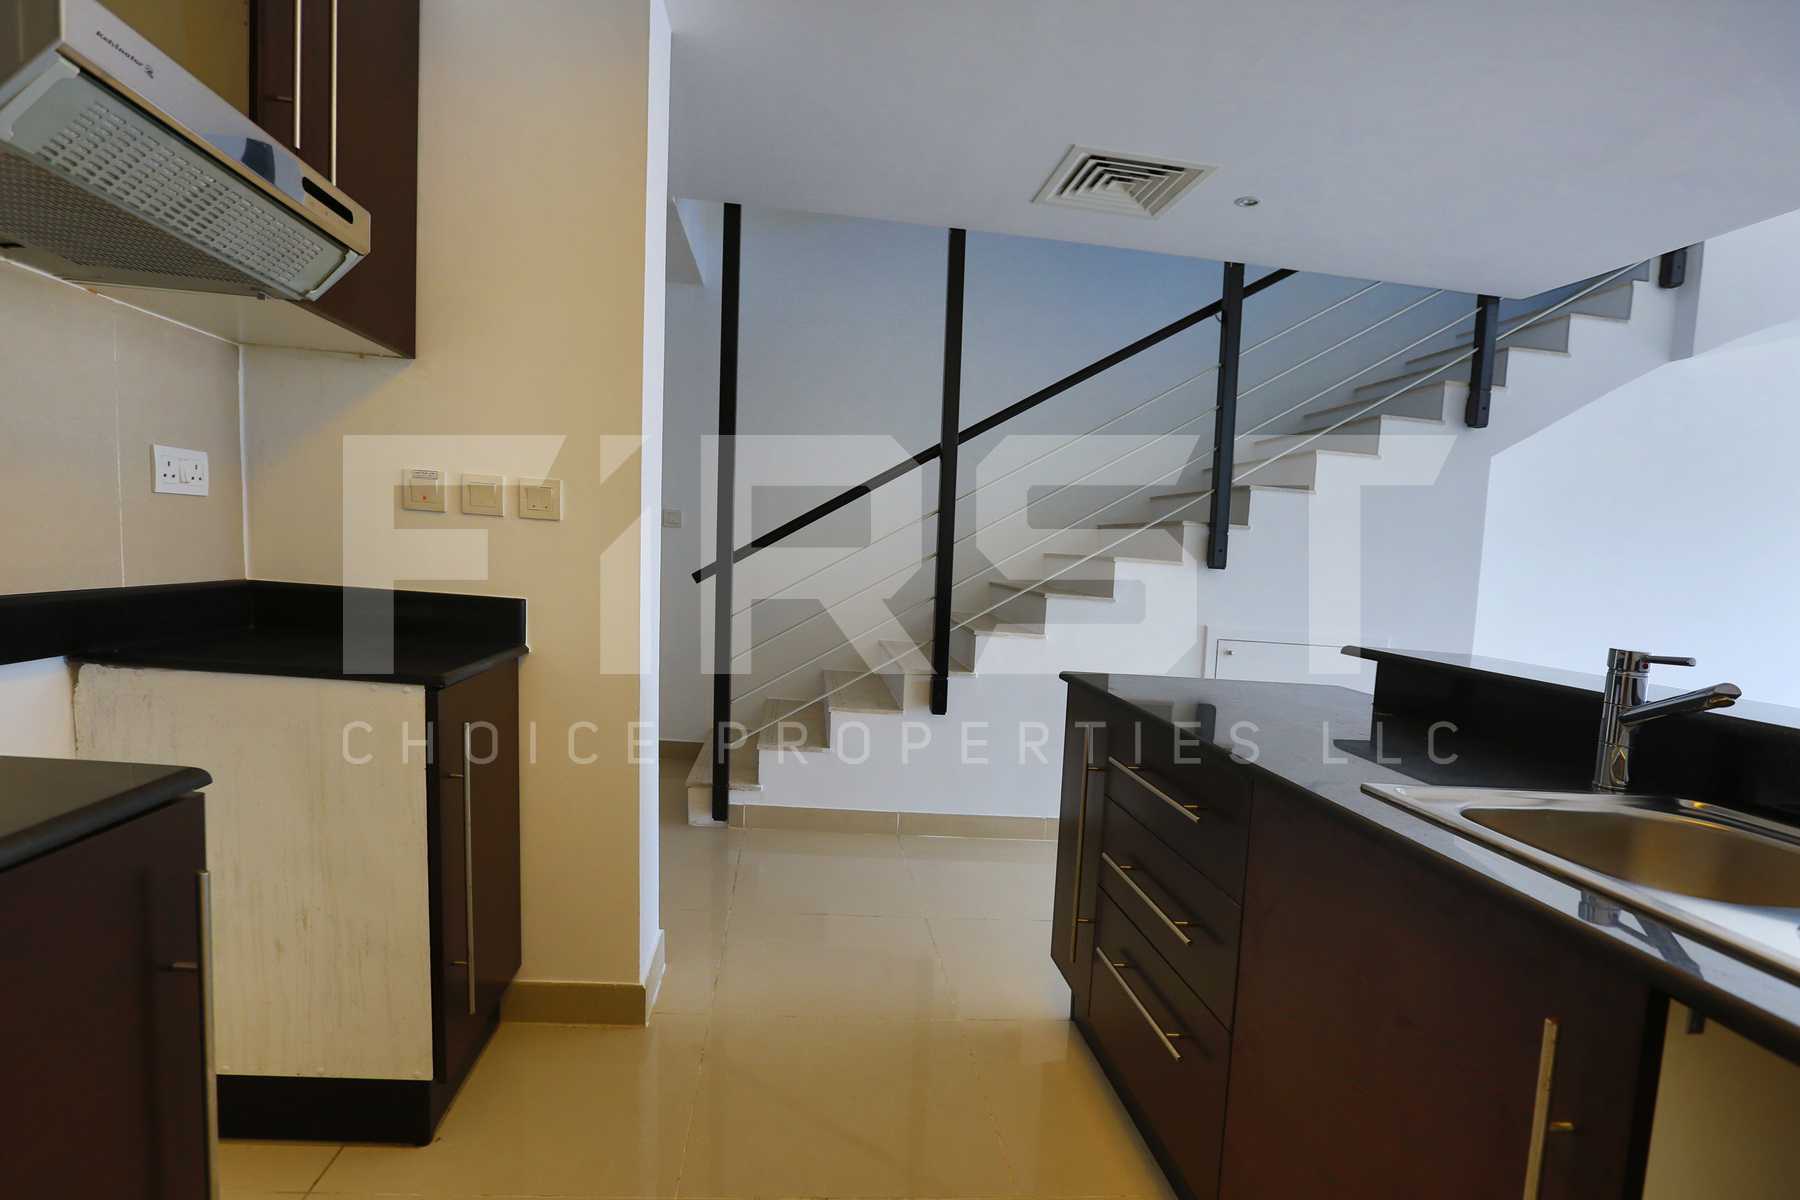 Internal Photo of 3 Bedroom Villa in Al Reef Villas Al Reef Abu Dhabi UAE 225.2 sq.m 2424 sq.ft (7).jpg